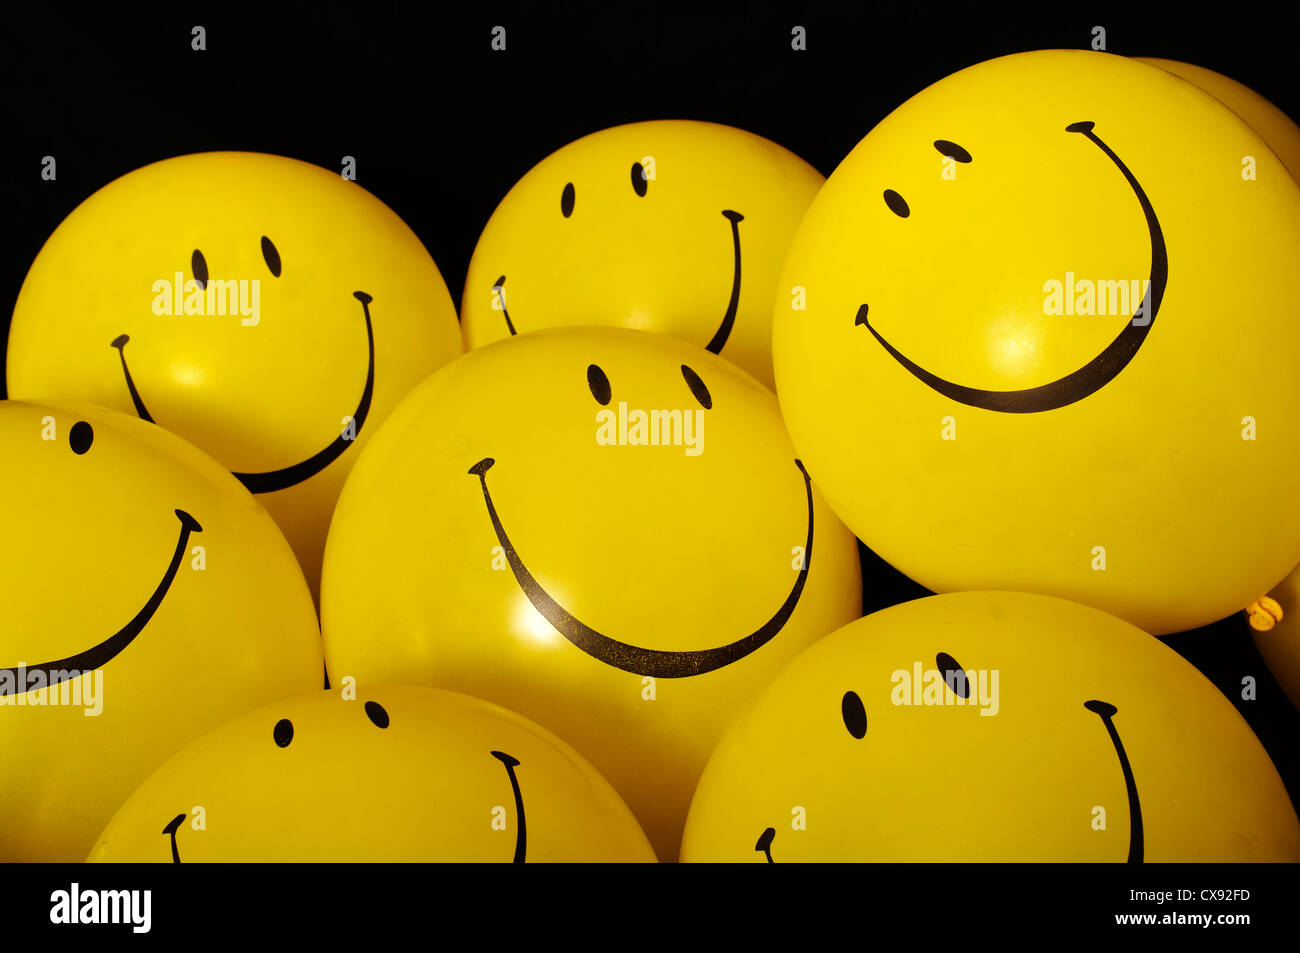 Smiley face balloons Stock Photo